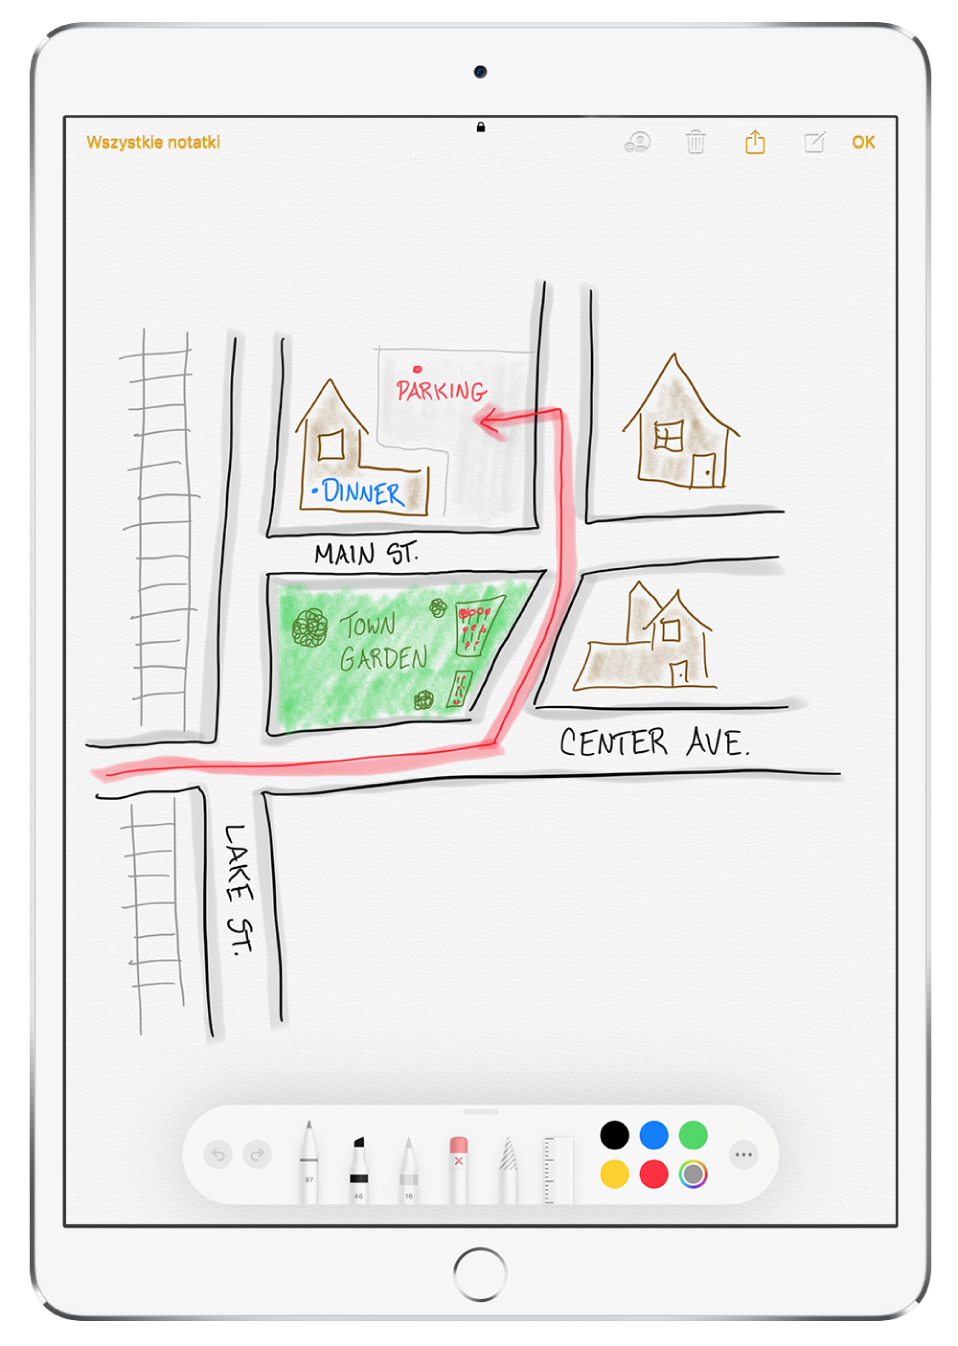 Rysunek przedstawiający mapę okolicy, umieszczony w notatce w aplikacji Notatki. Na rysunku widoczne są ulice wraz z ich nazwami oraz czerwona strzałka wskazująca miejsce parkingowe. Na dole ekranu znajduje się pasek narzędzi oznaczeń z wybranym narzędziem do rysowania oraz kolorem.